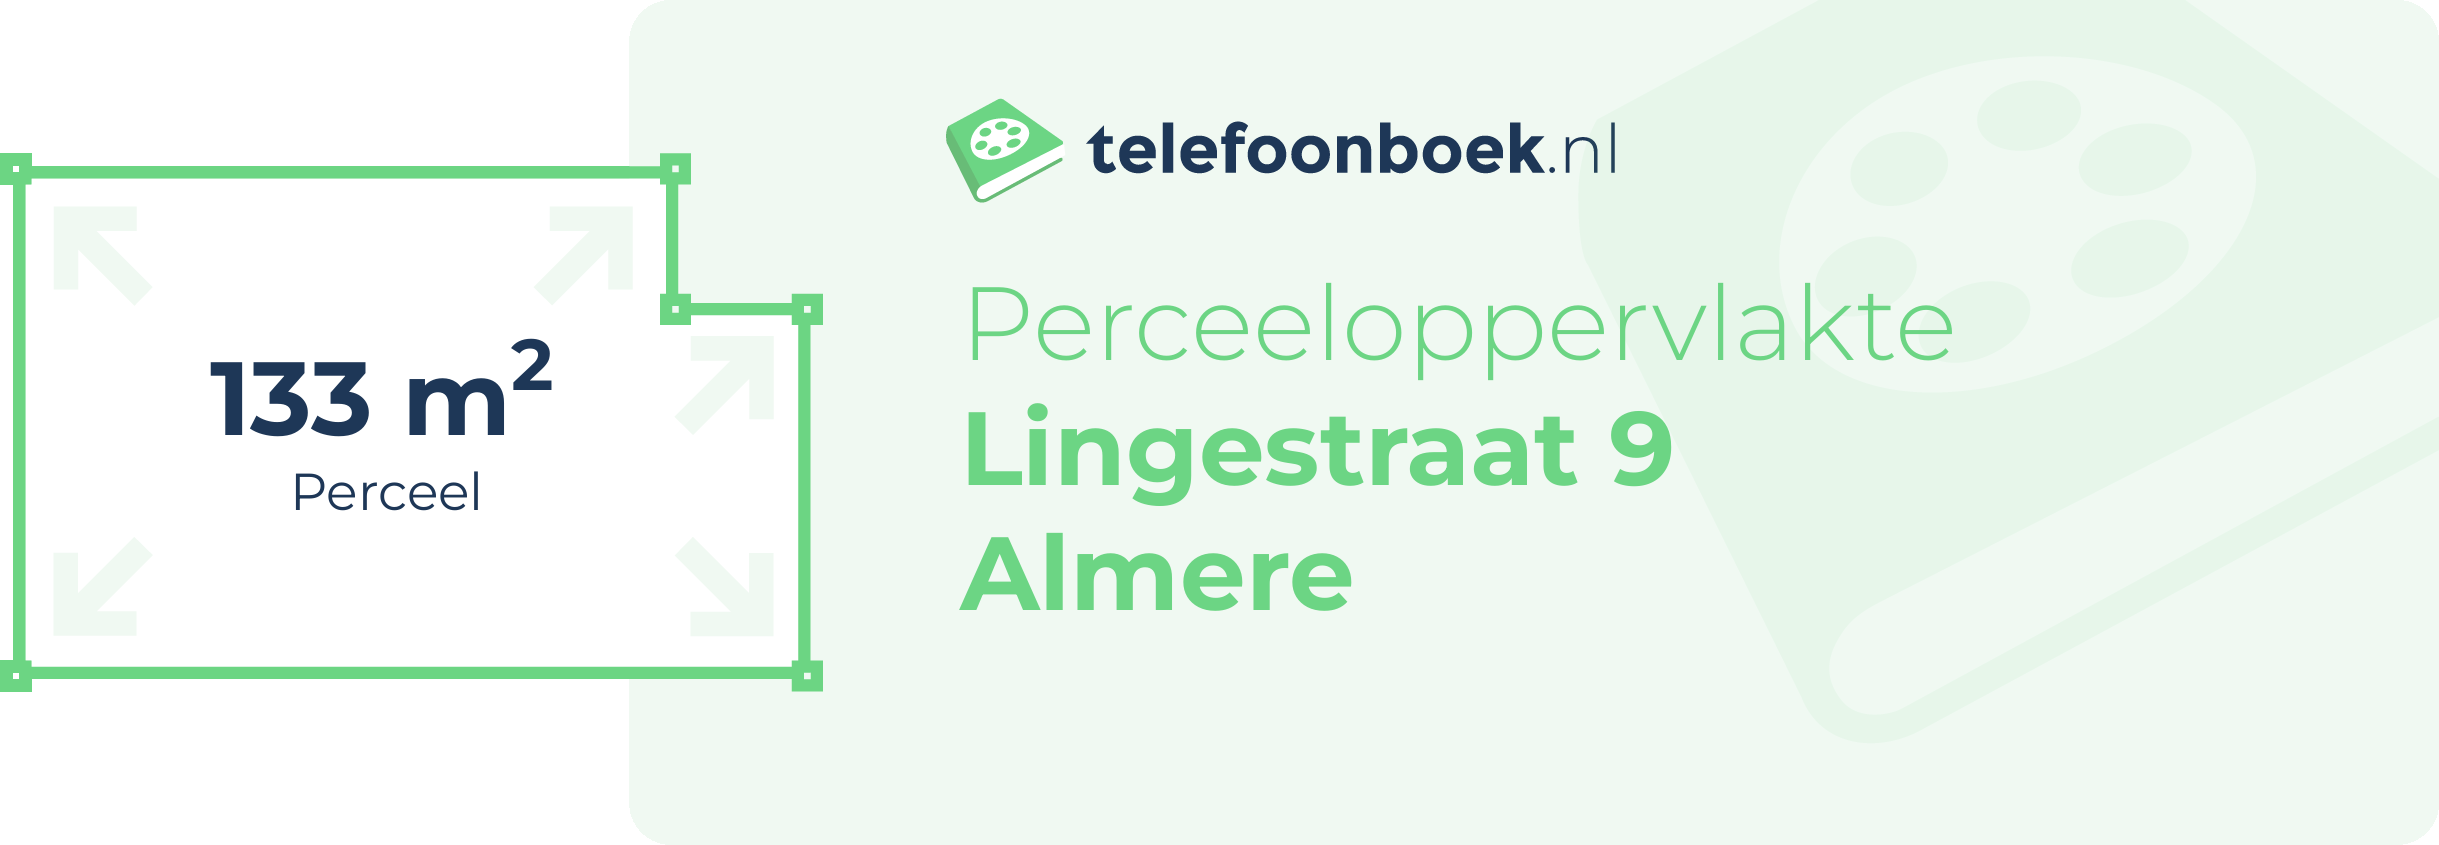 Perceeloppervlakte Lingestraat 9 Almere